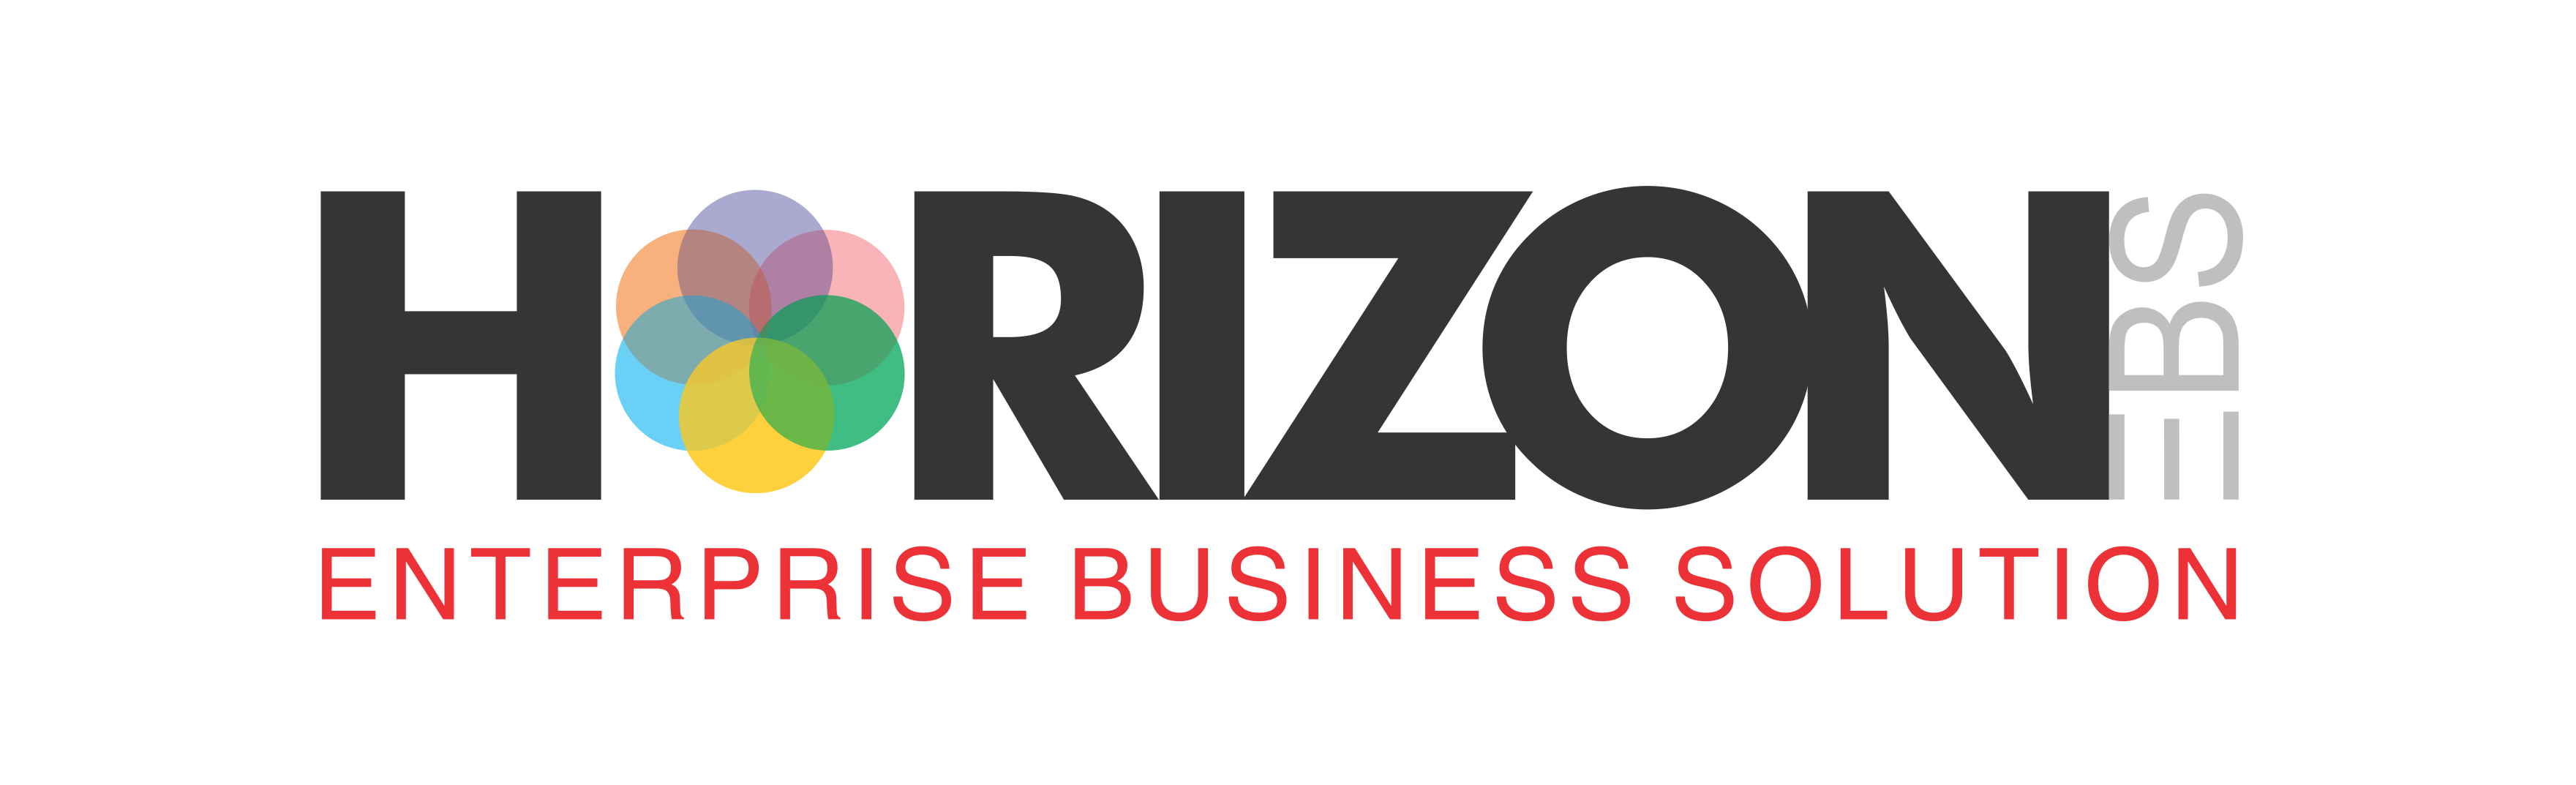 Horizon Enterprise Business Solution